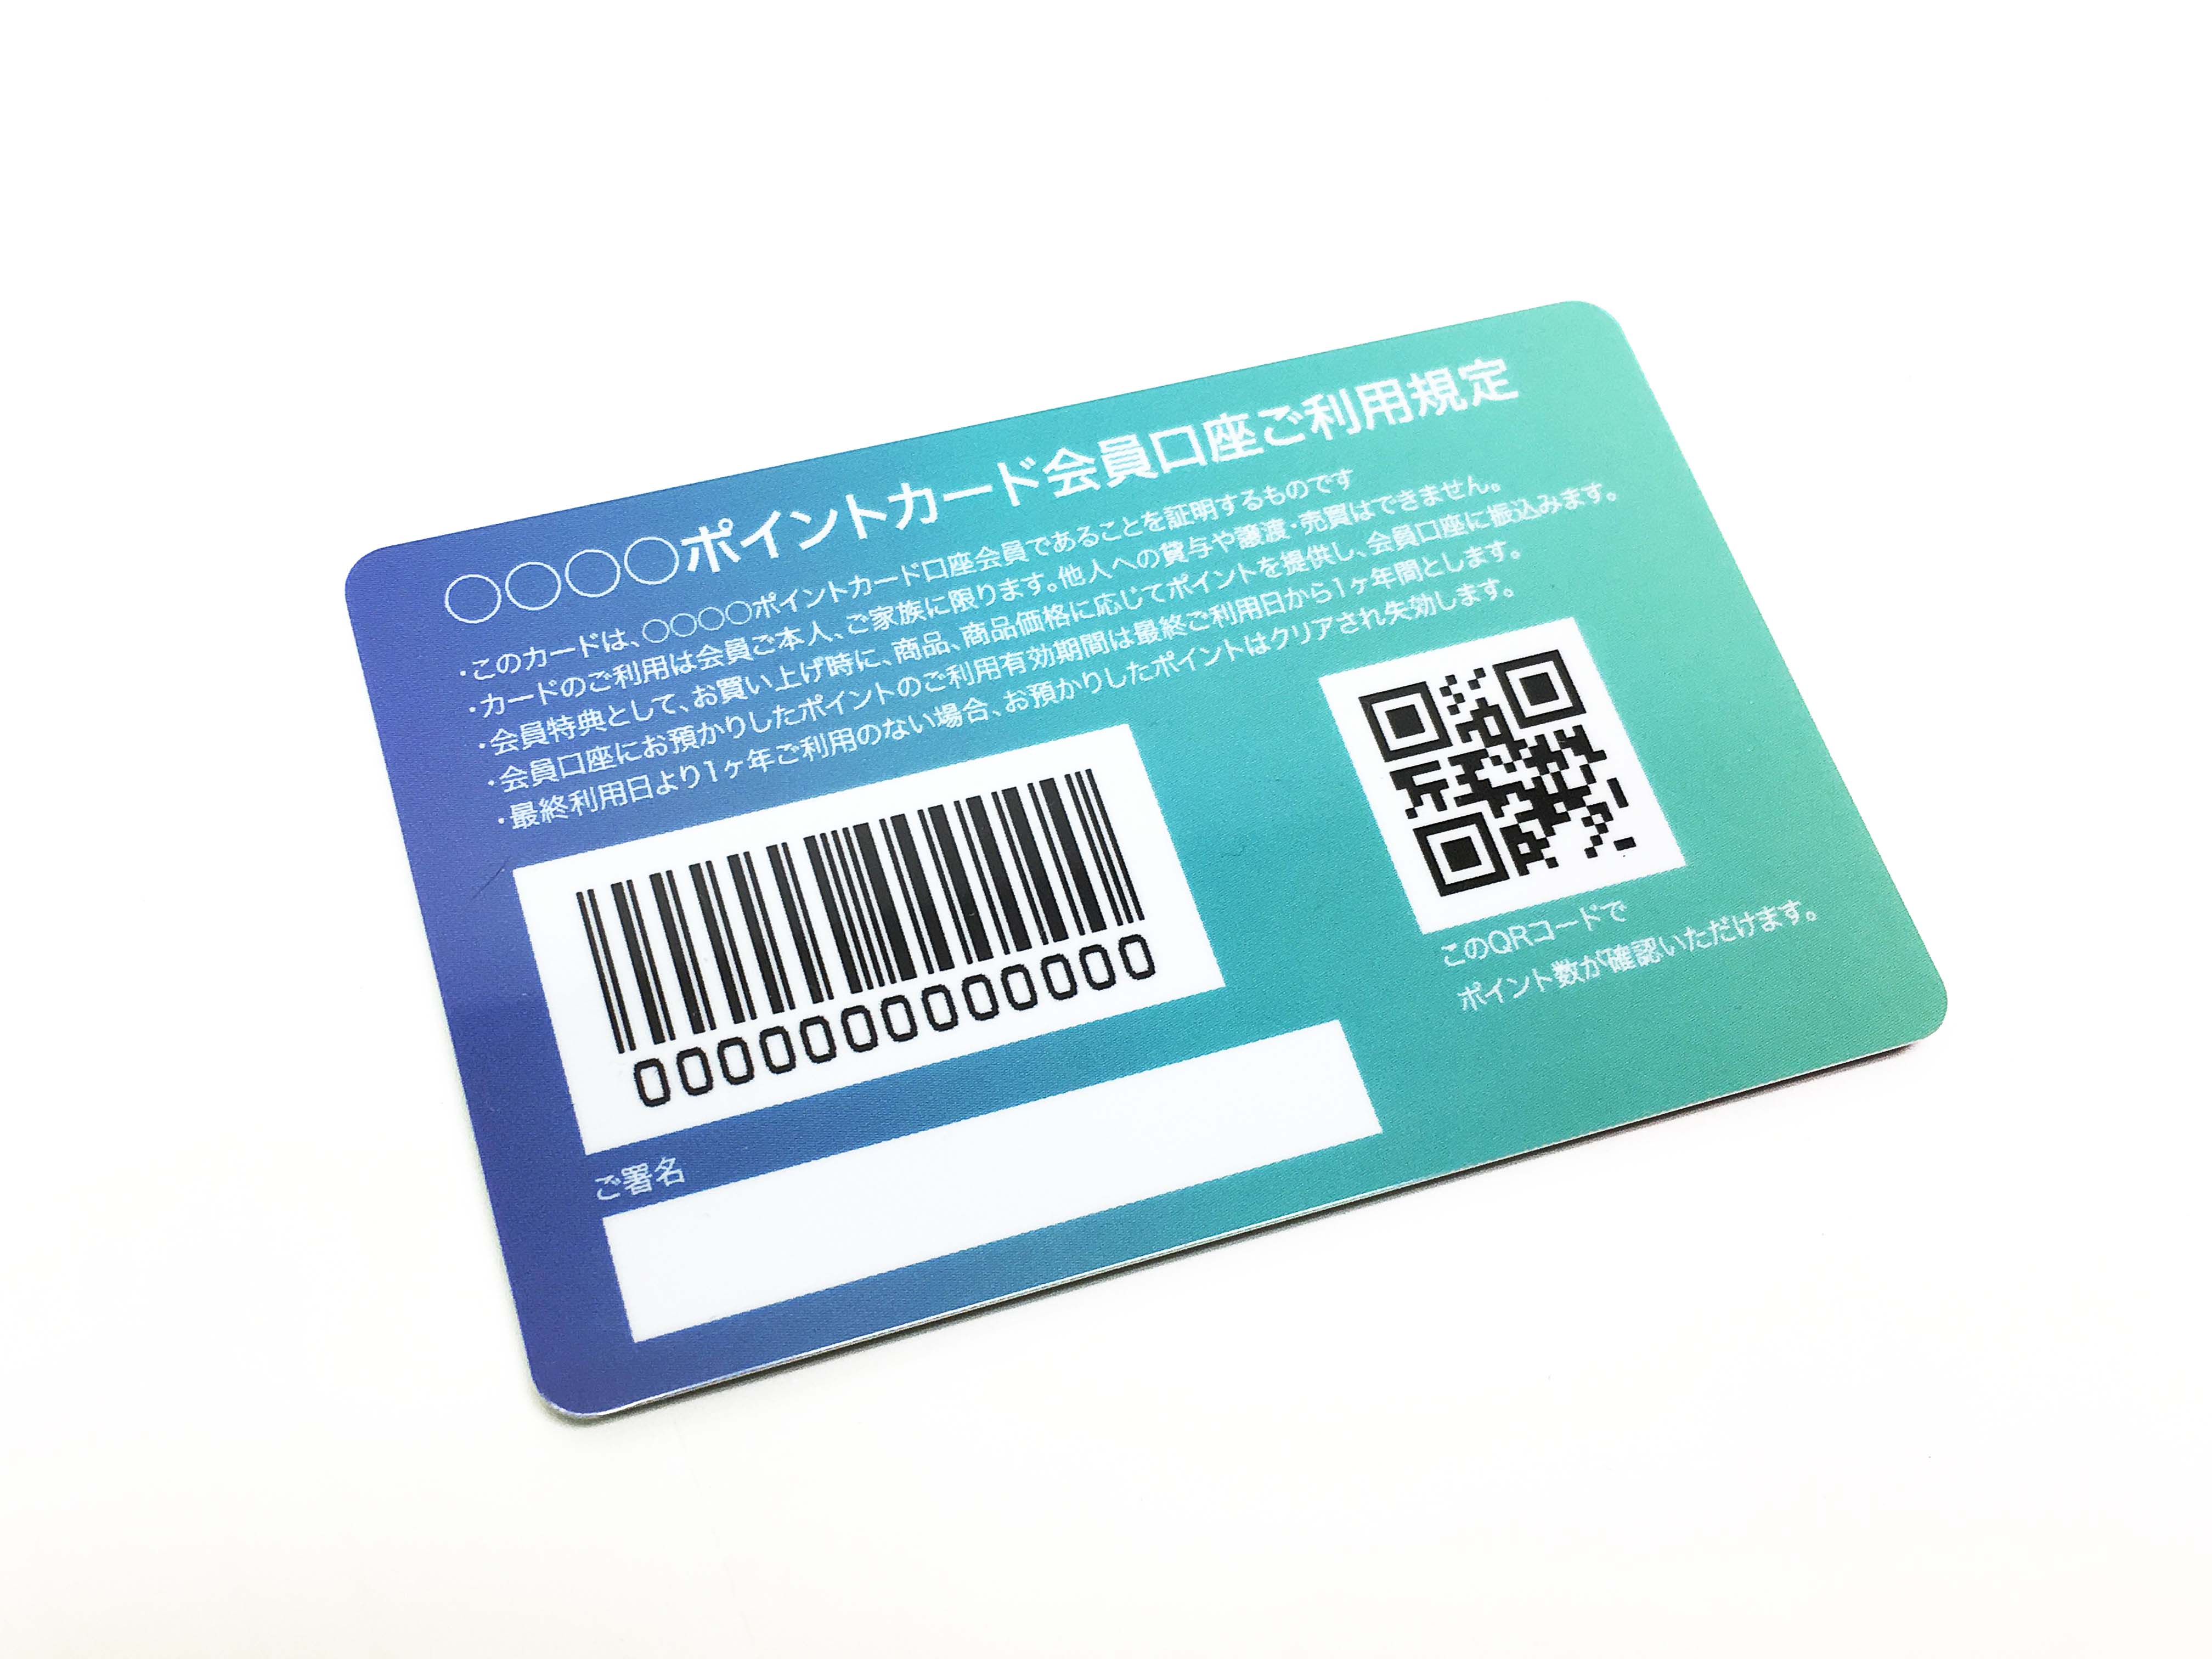 マットpetカード 診察券 ポイントカード カード印刷ならgoodcard